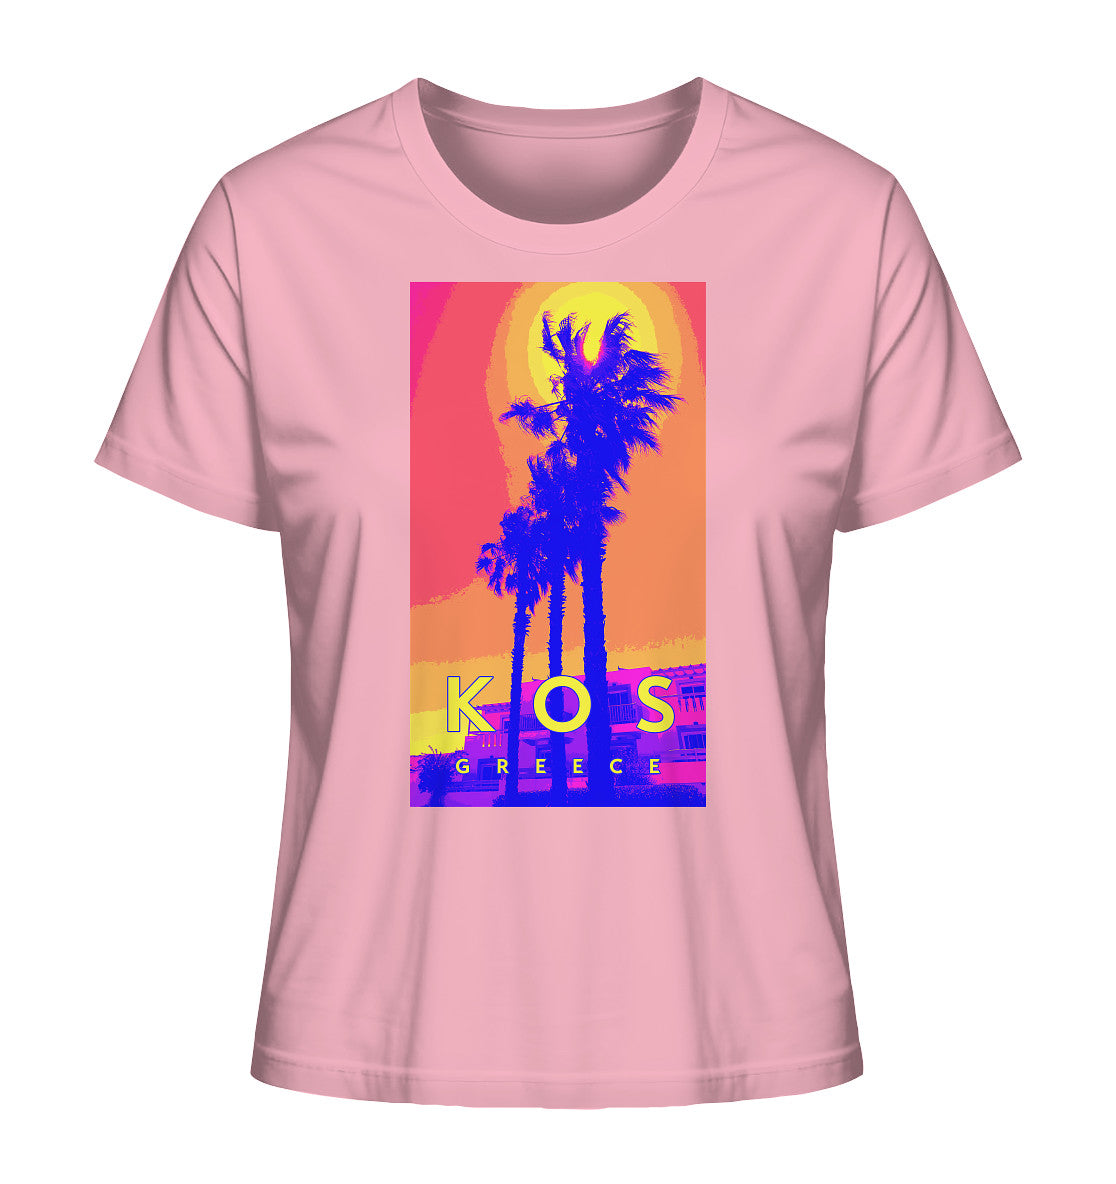 Blue palm trees Kos Greece - Ladies Organic Shirt